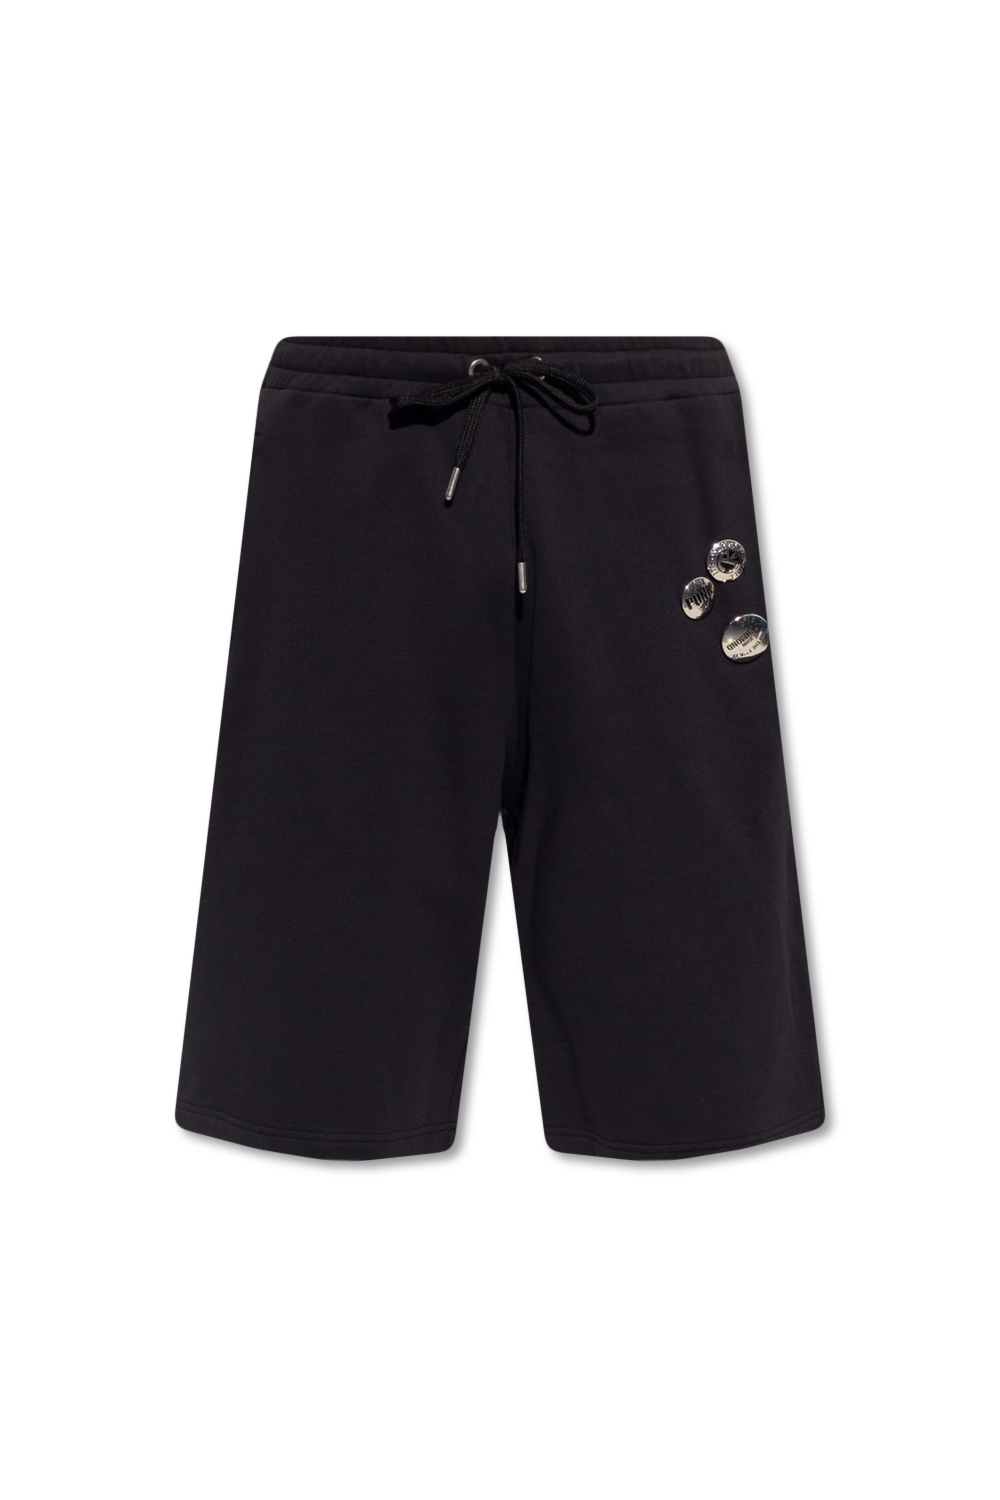 Louis Vuitton Lvse Soft Cargo Shorts BLACK. Size 42